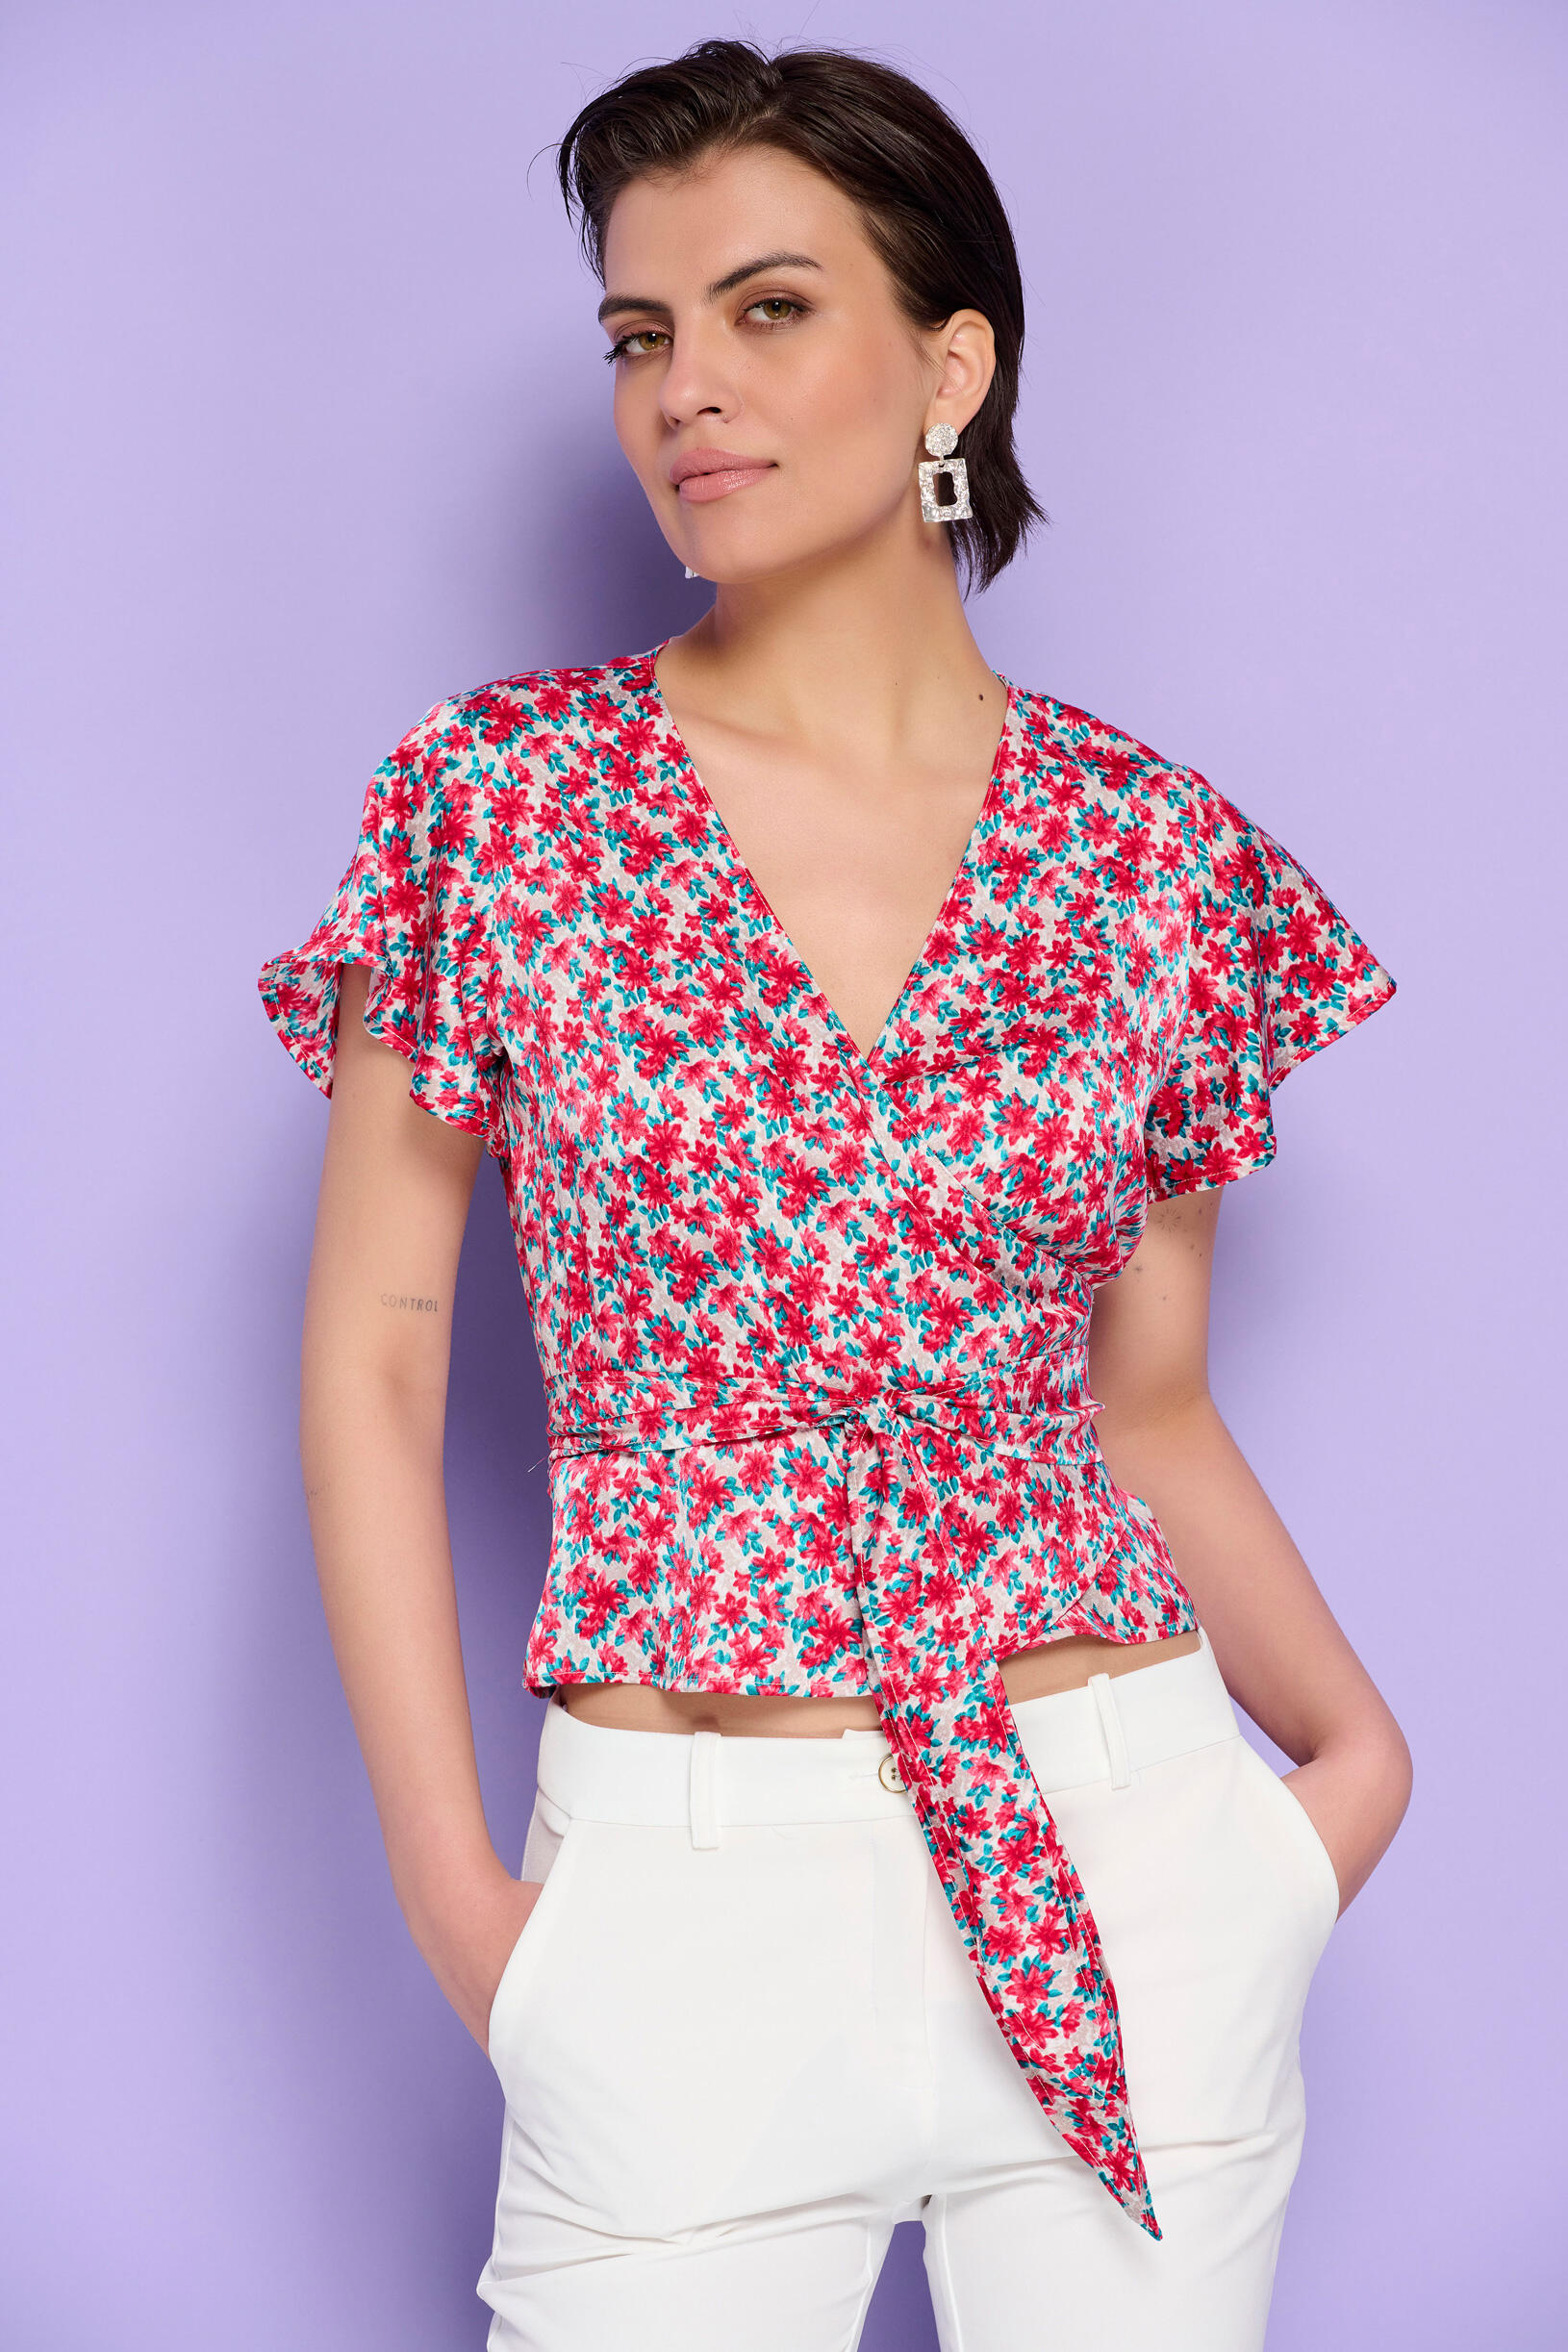 Μπλούζα κρουαζέ με floral μοτίβο | Γυναικεία Ρούχα Bill Cost